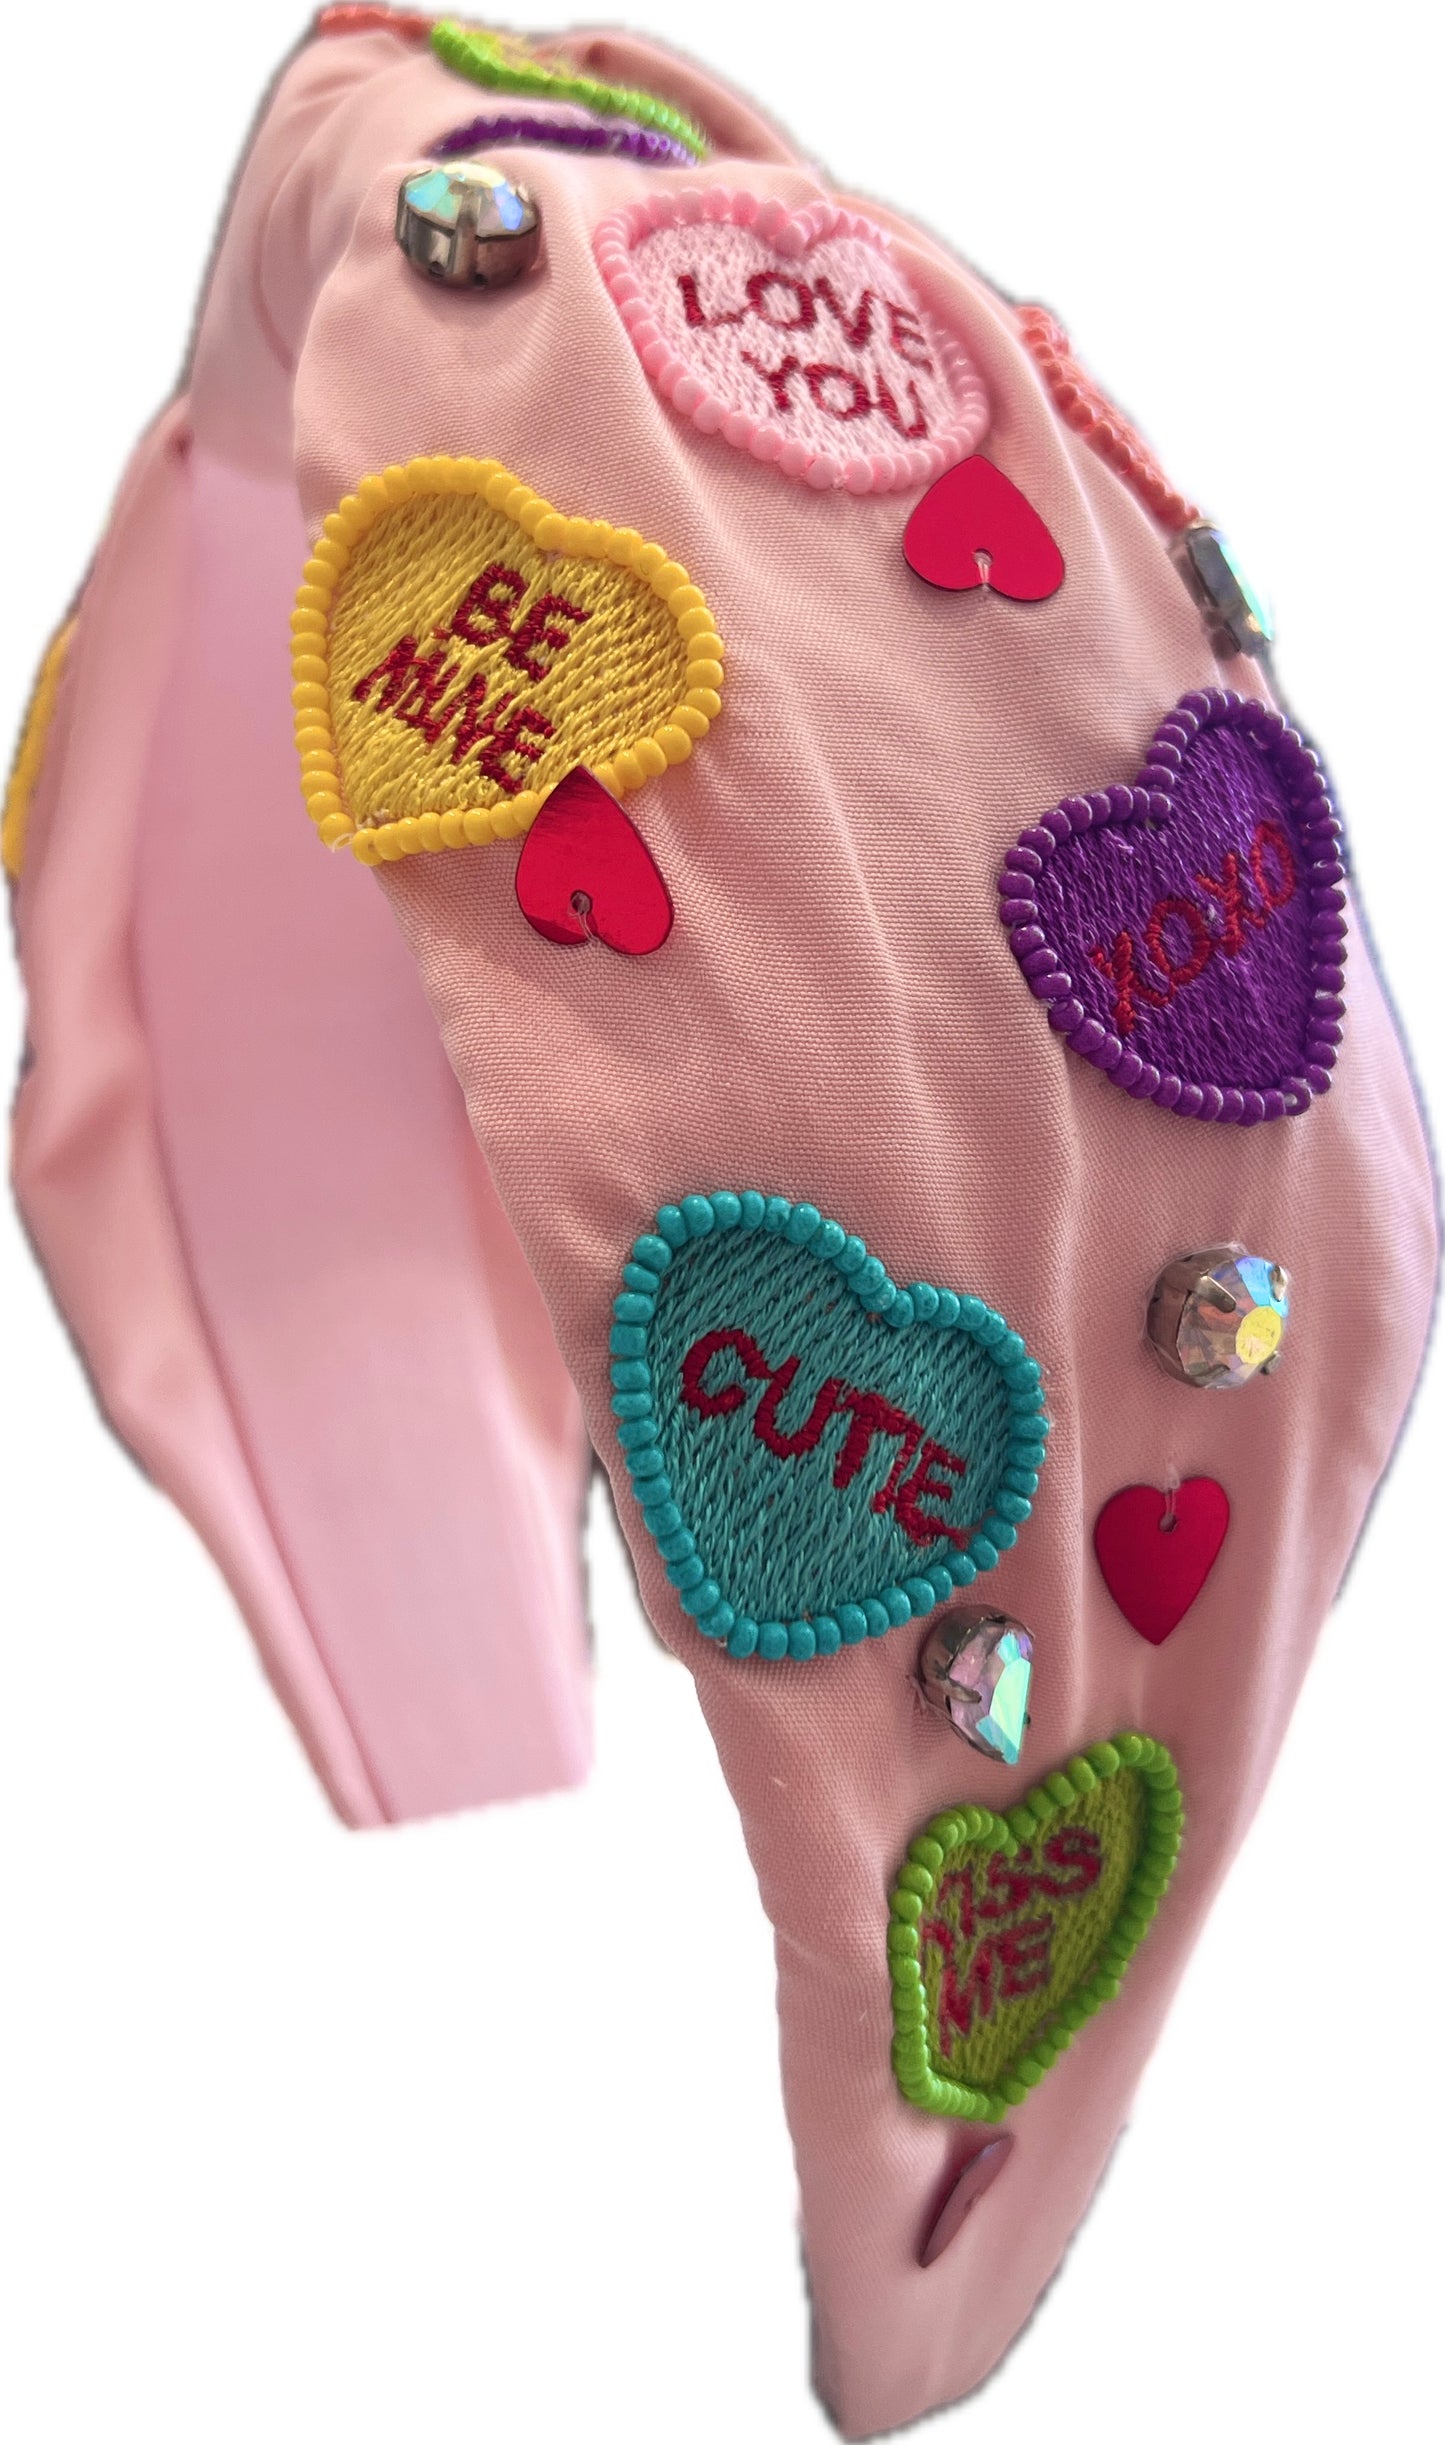 Candy Hearts Valentine Headband